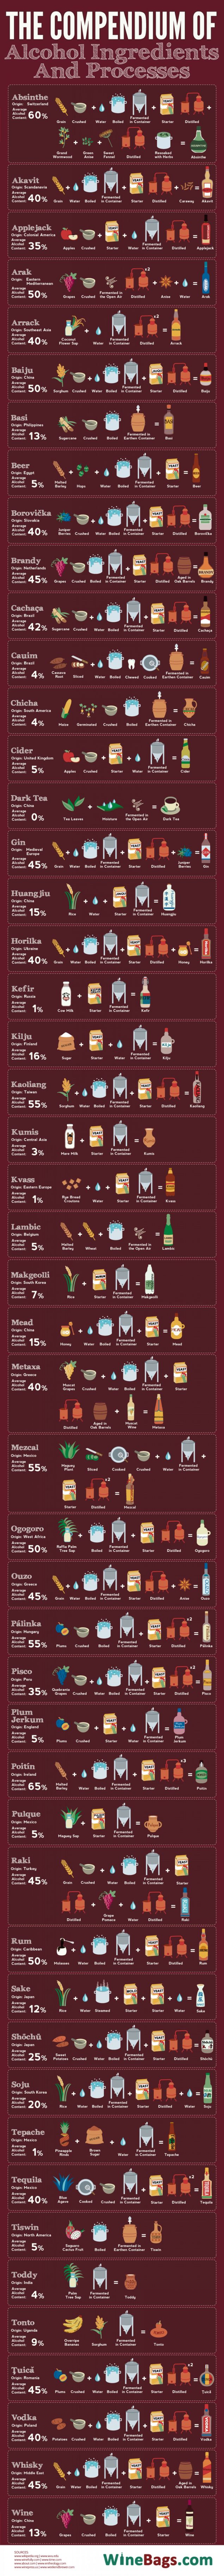 ingredientes y procesos de las bebidas alcoholicas_unpocogeek.com